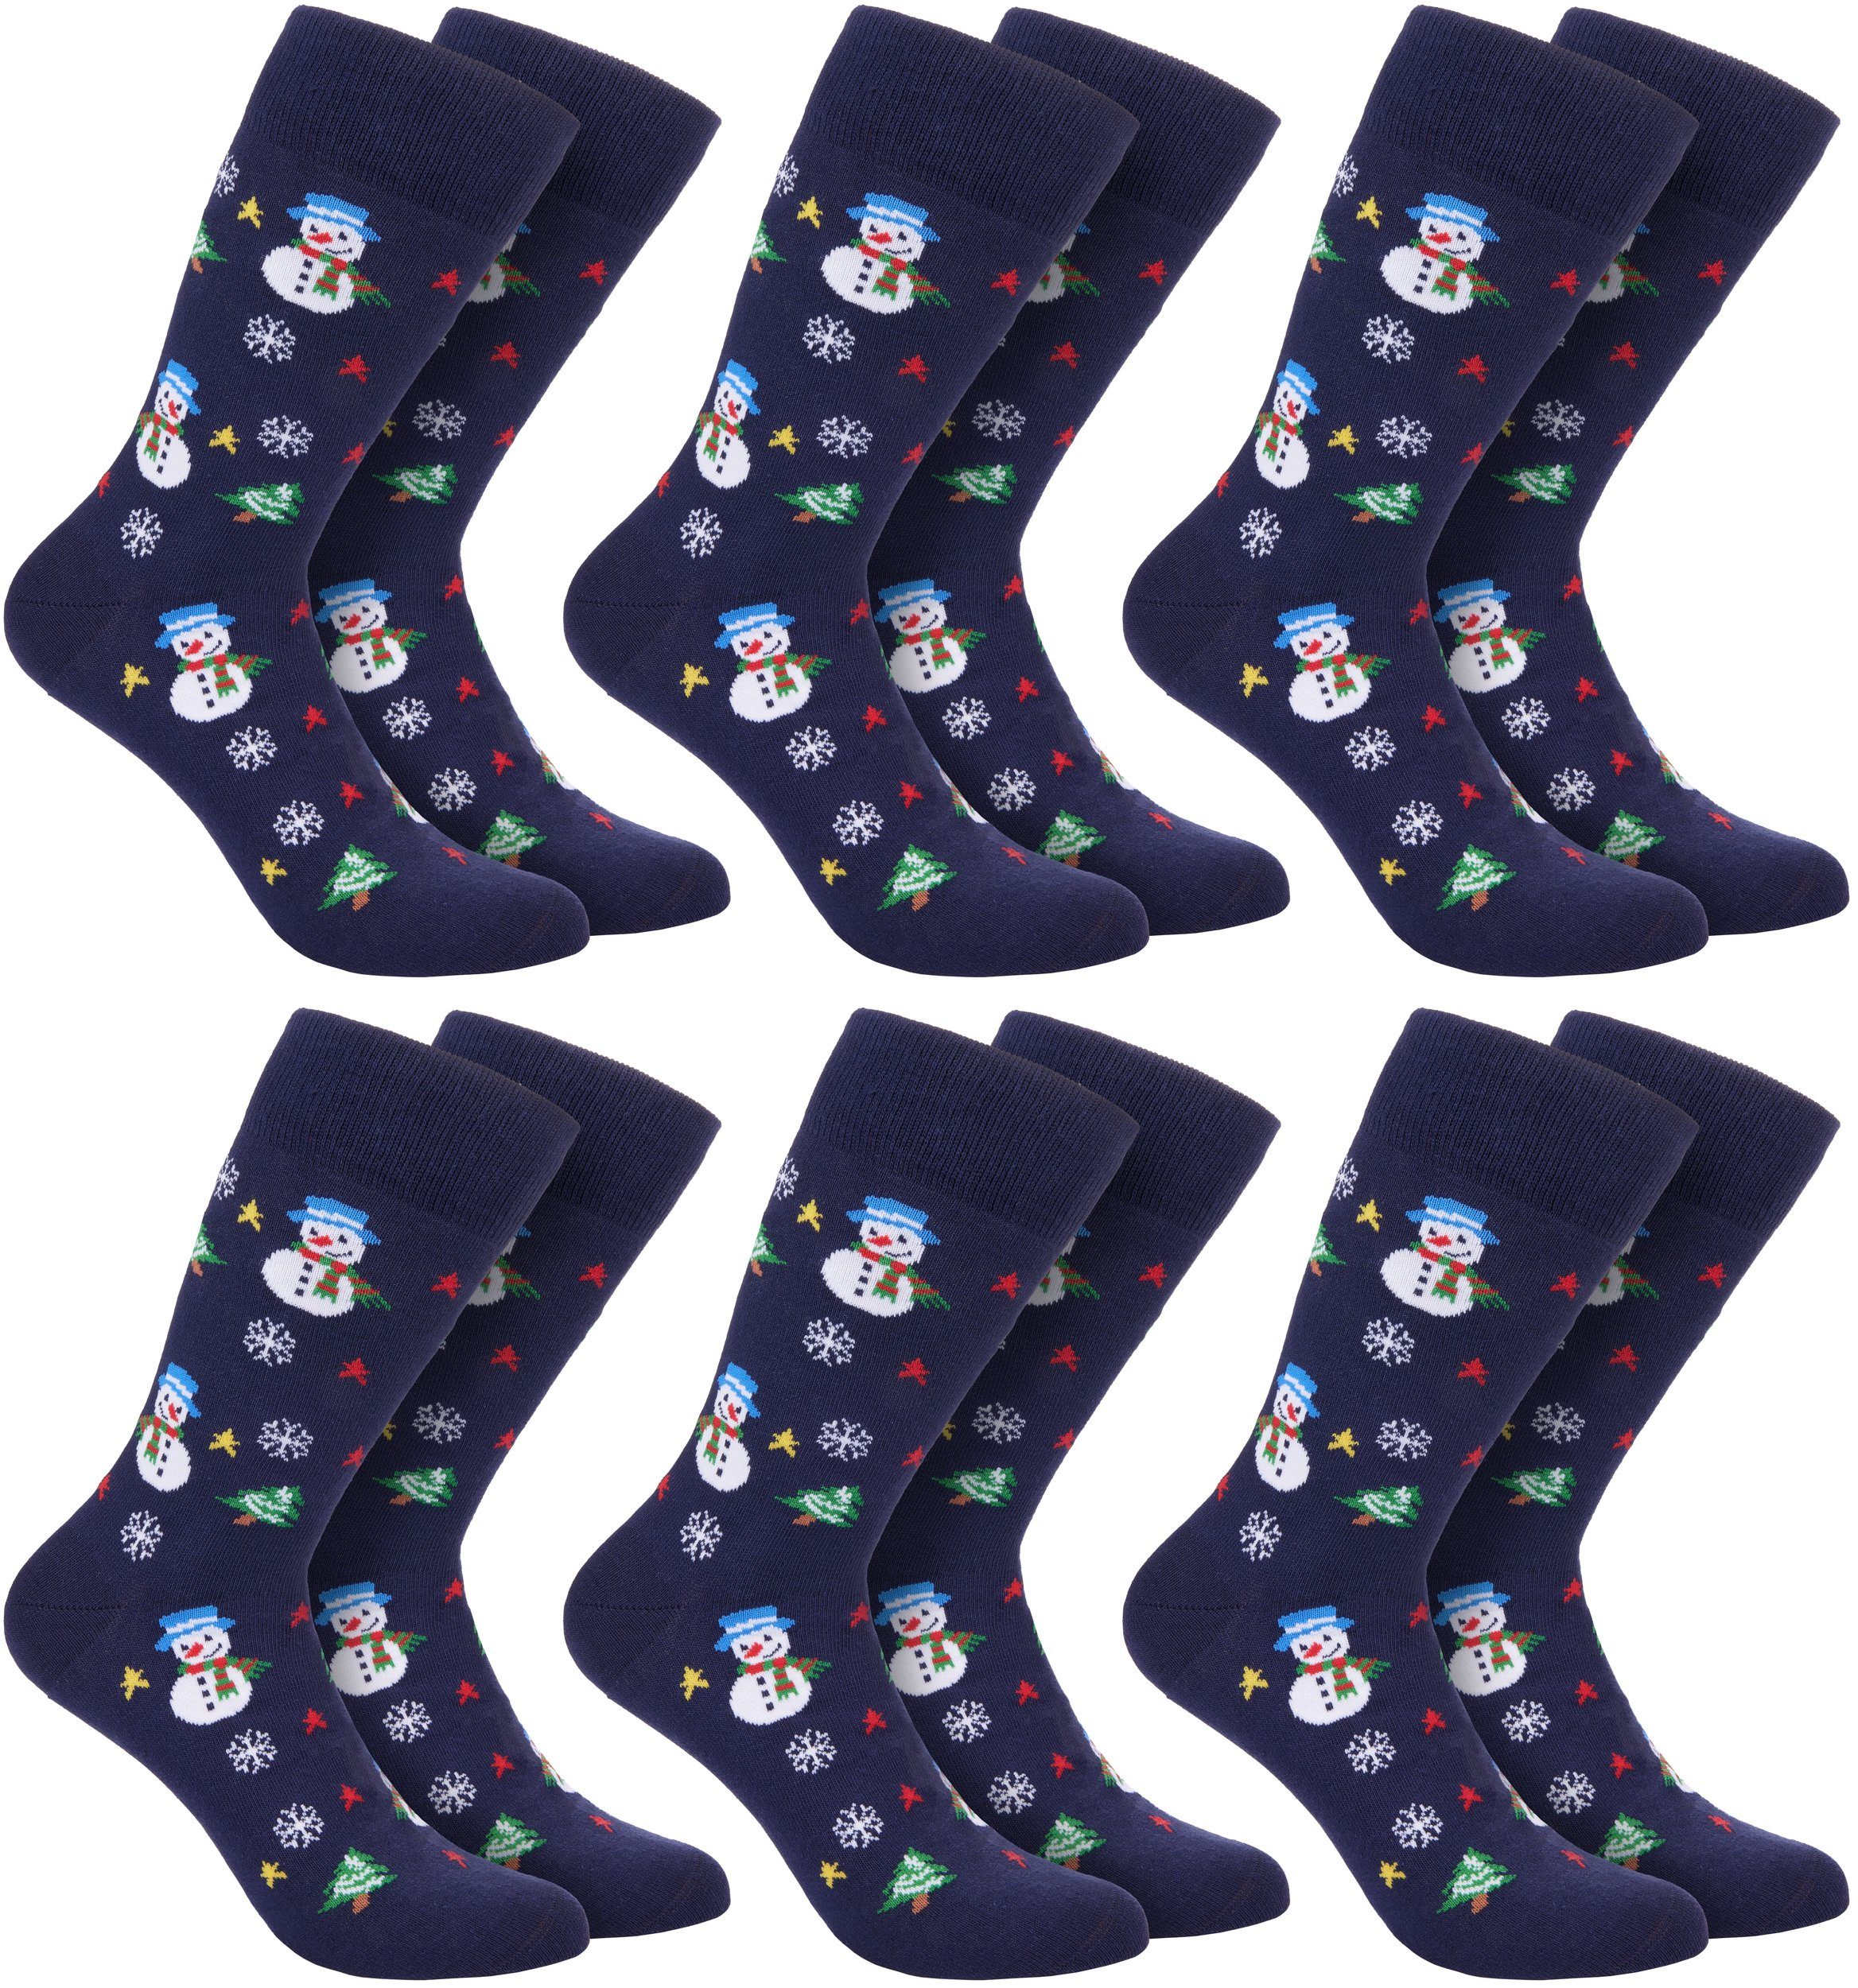 BRUBAKER Socken Weihnachtssocken für Damen und Herren (6-Paar, Wintersocken) Festliche Weihnachtsmotive - Baumwolle Socken Weihnachten - Unisex